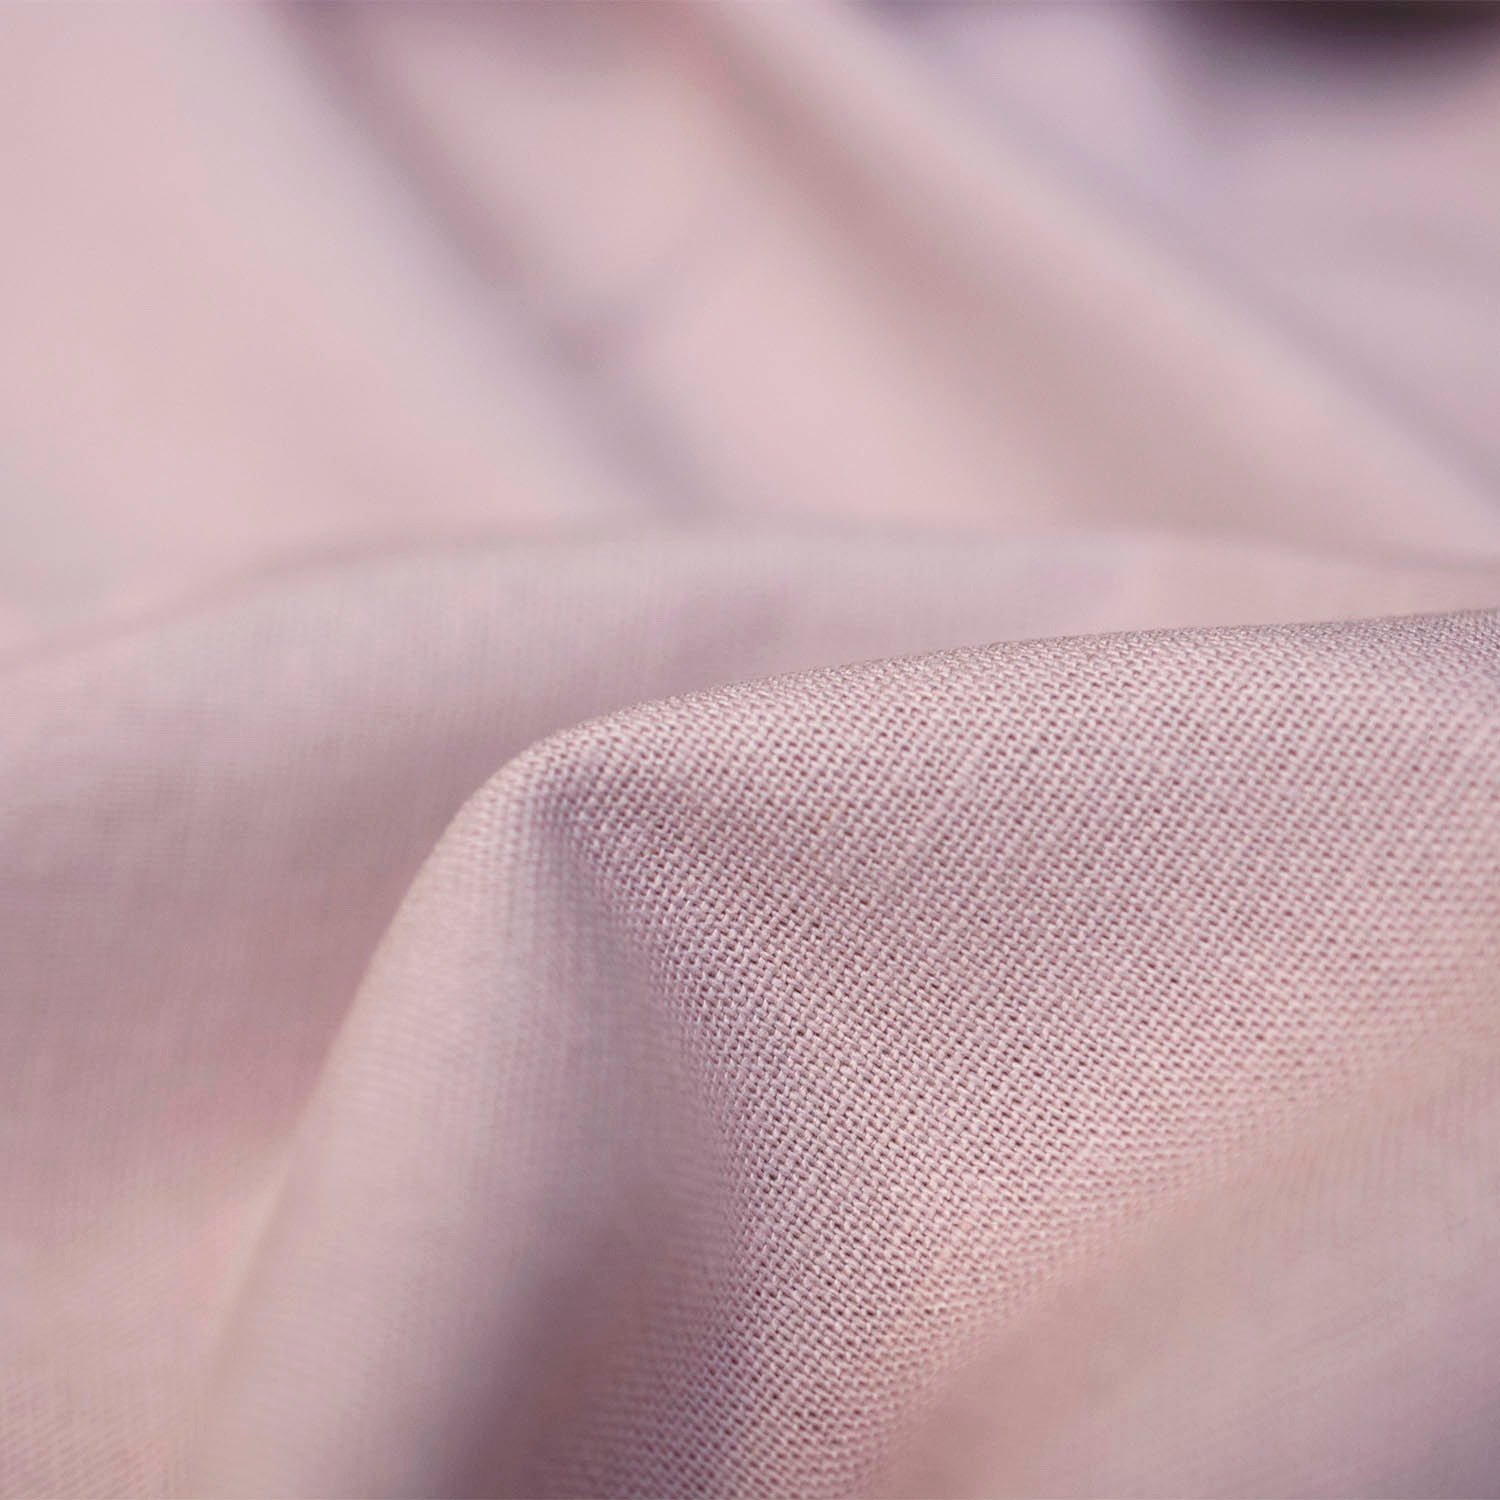 Tkanina lniana o jednolitym zabarwieniu, idealna na wiosenną letnią odzież.